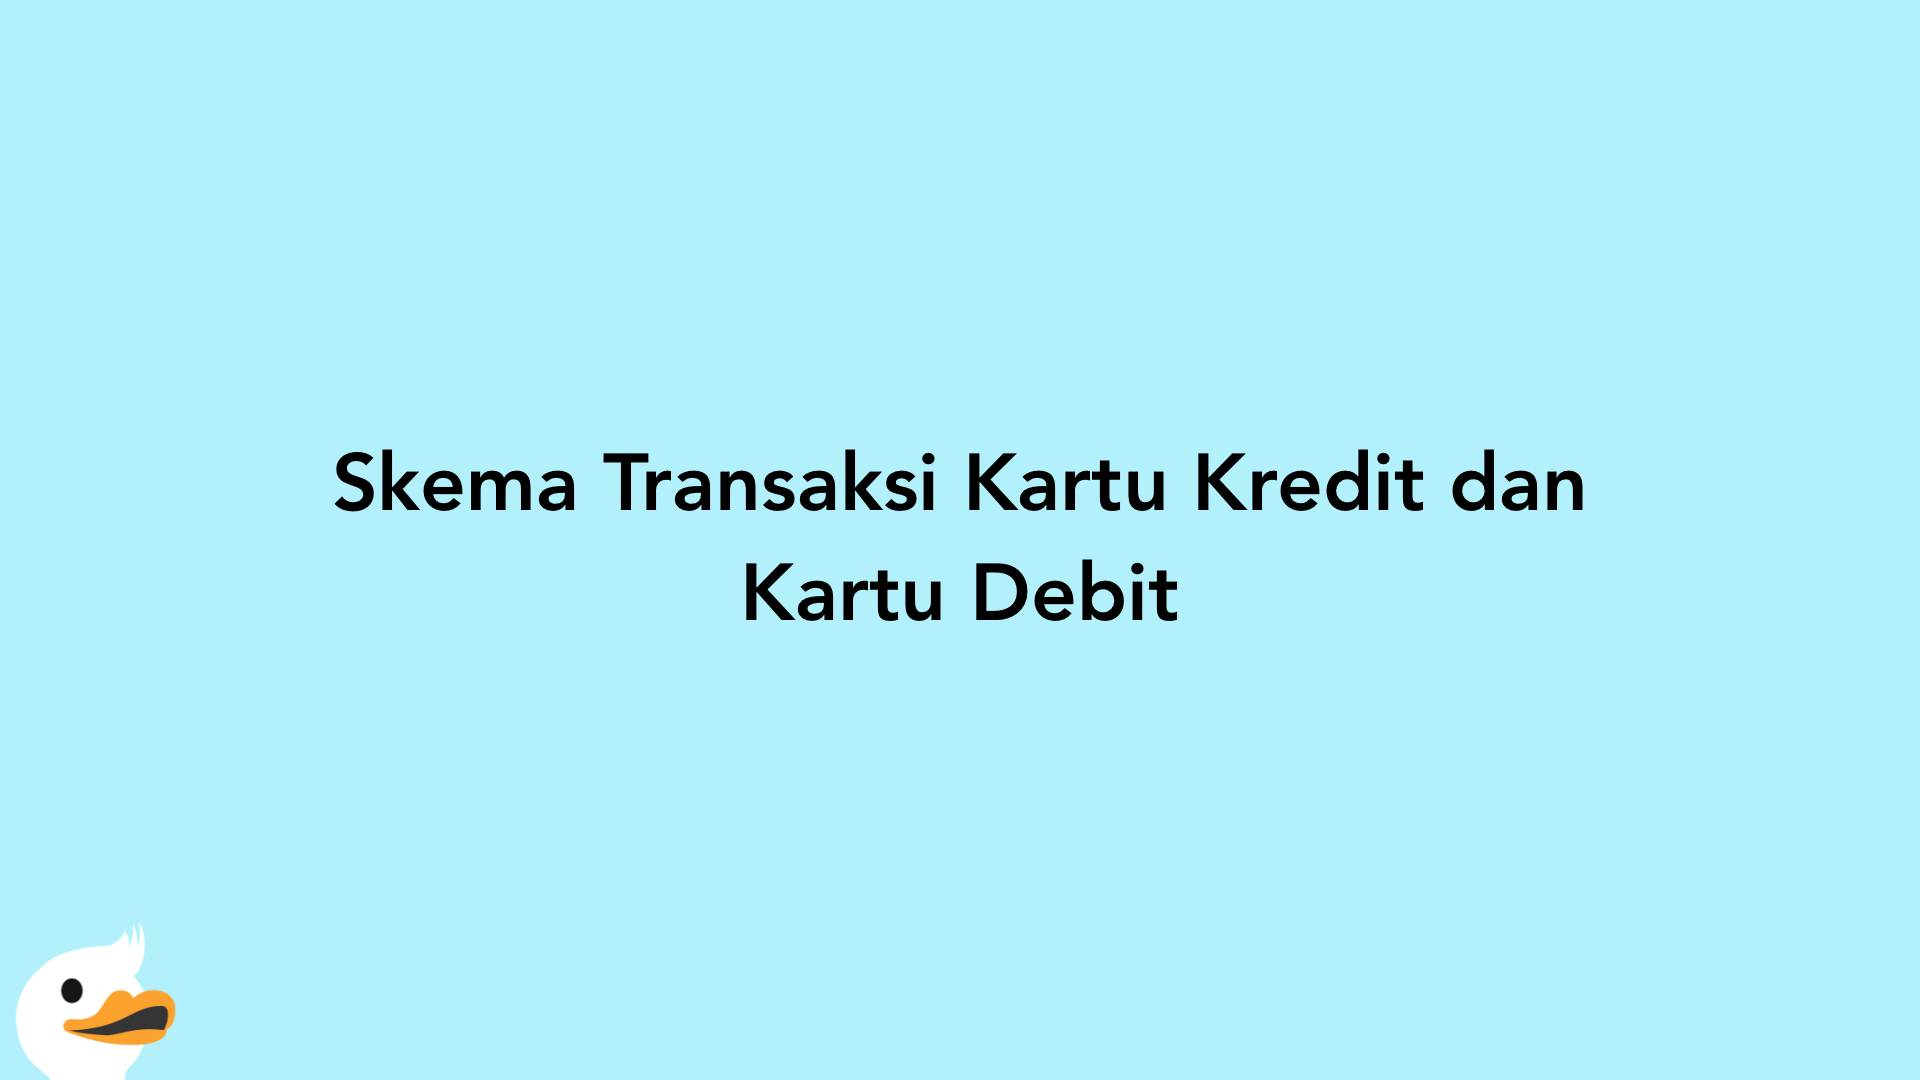 Skema Transaksi Kartu Kredit dan Kartu Debit